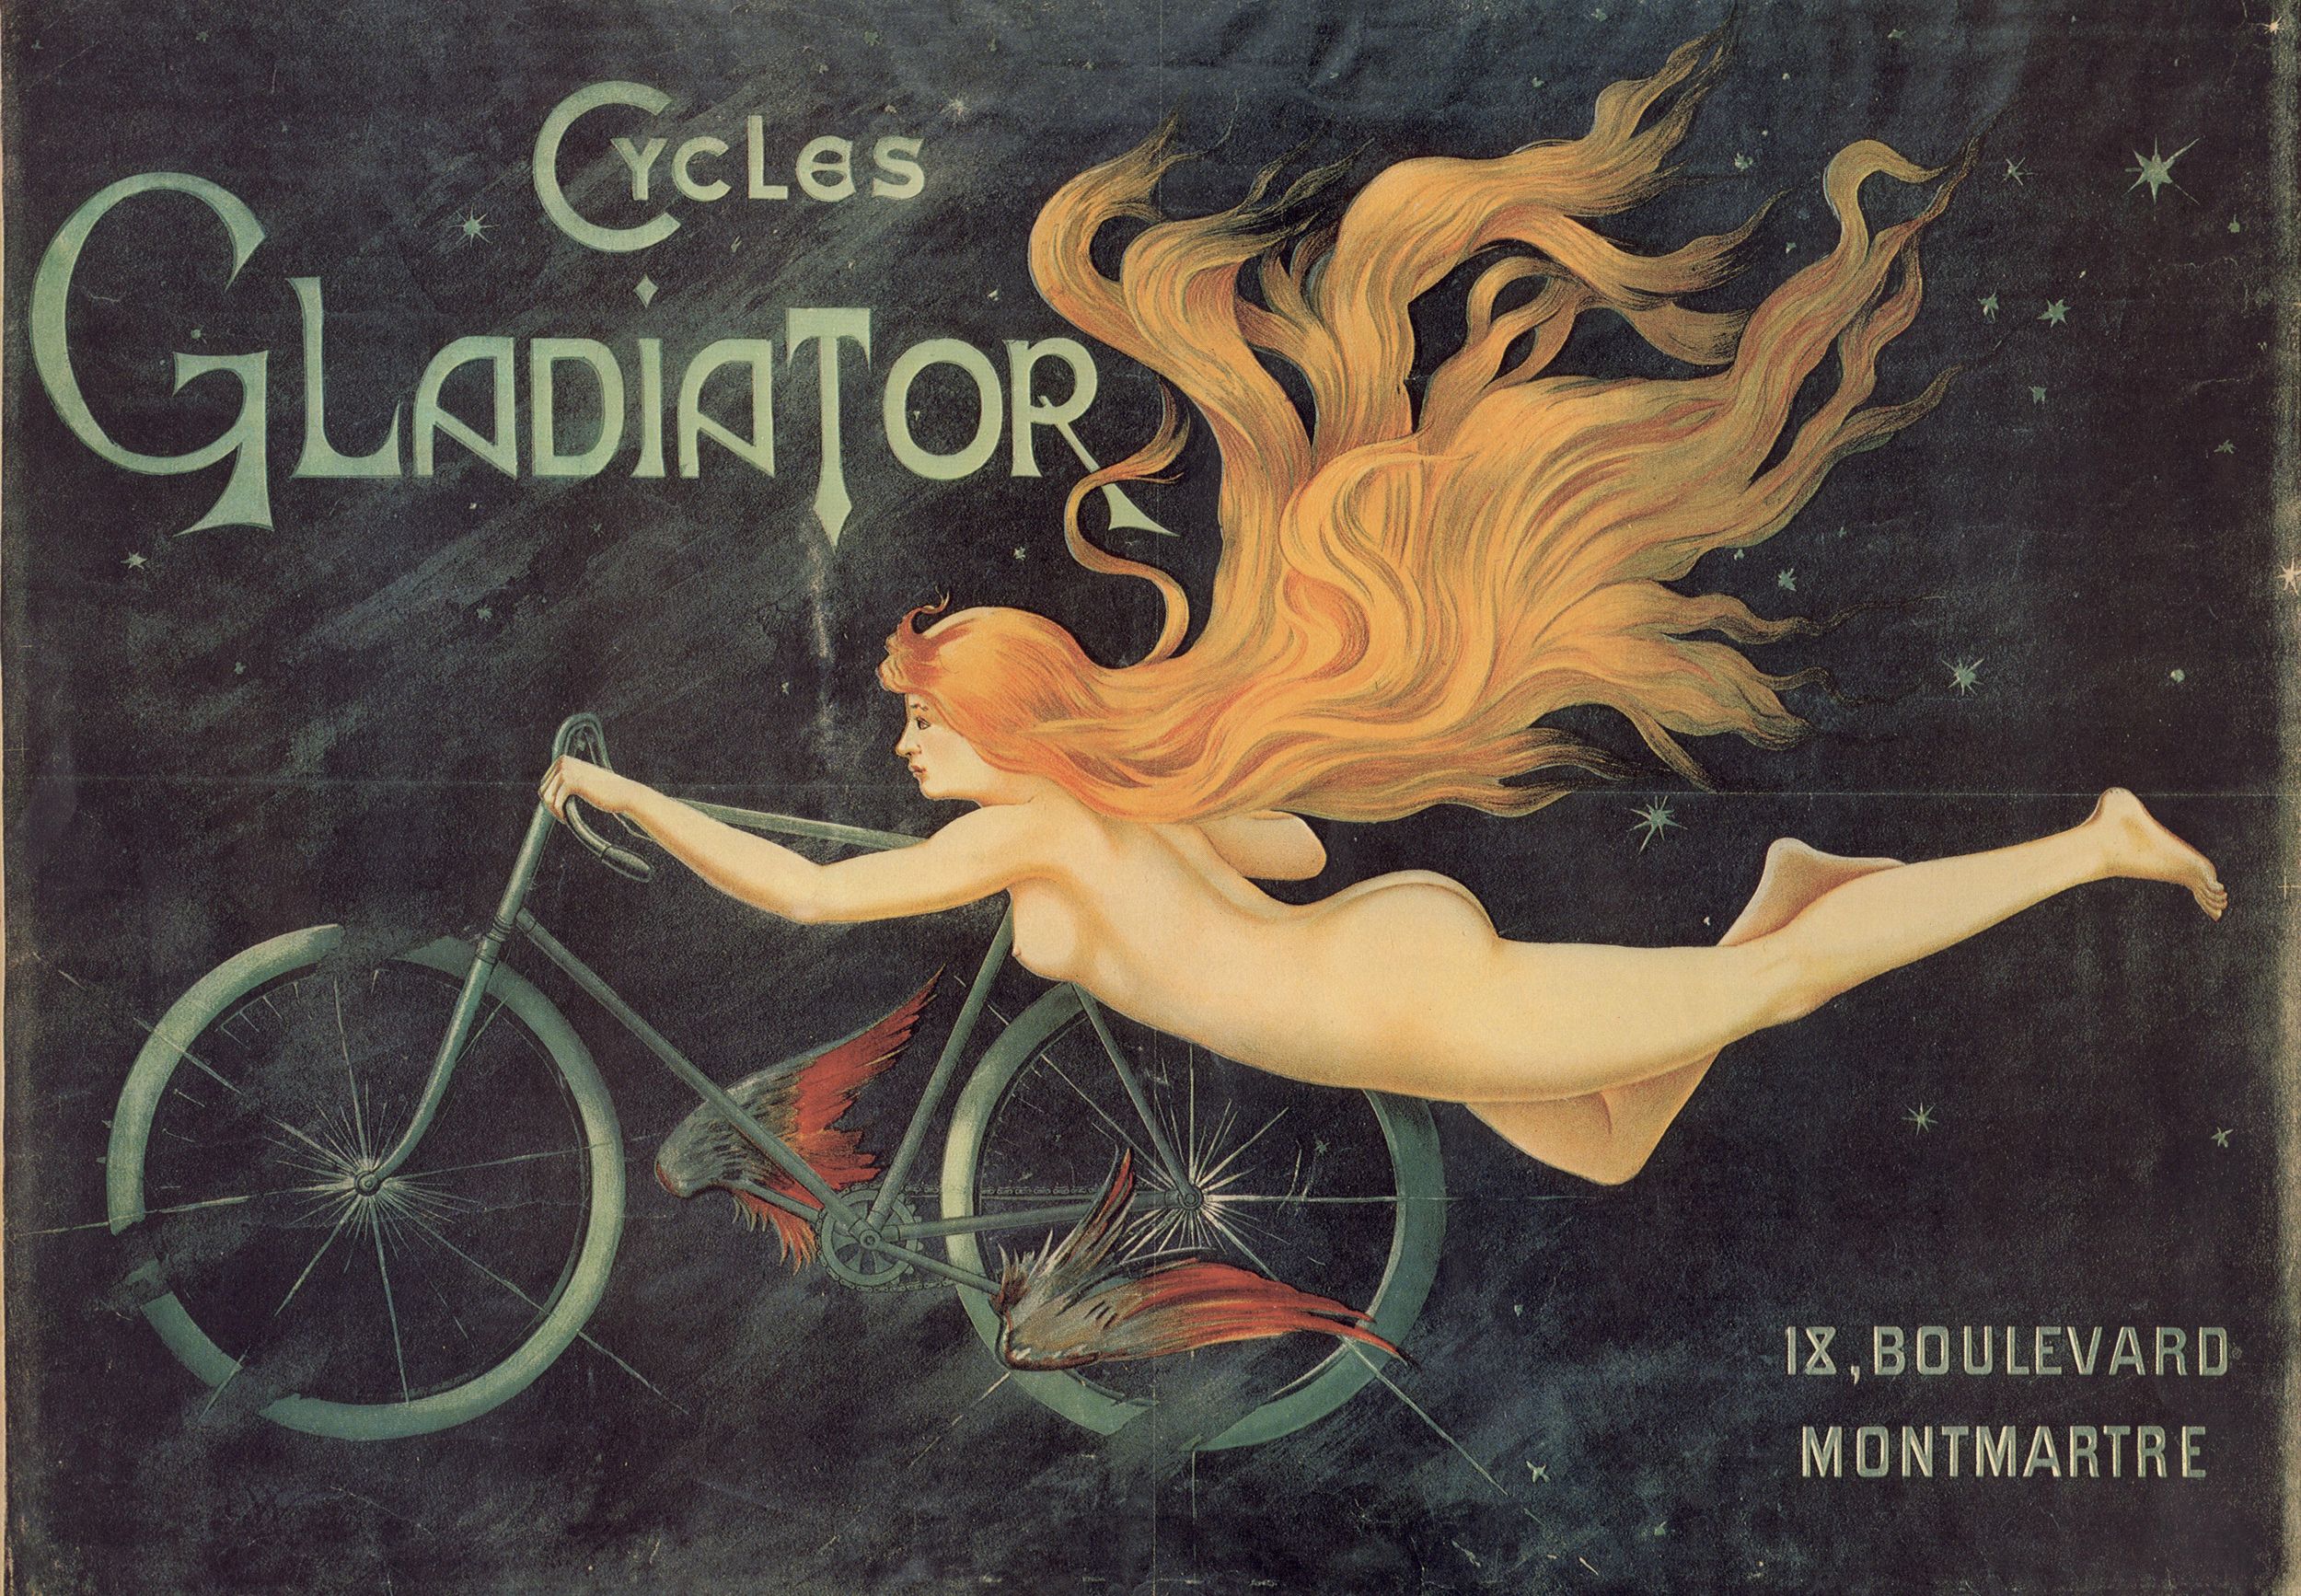 Cycles Gladiator, 18 boulevard Montmartre : affiche publicitaire couleur (1900, cote : 2FI/3428)